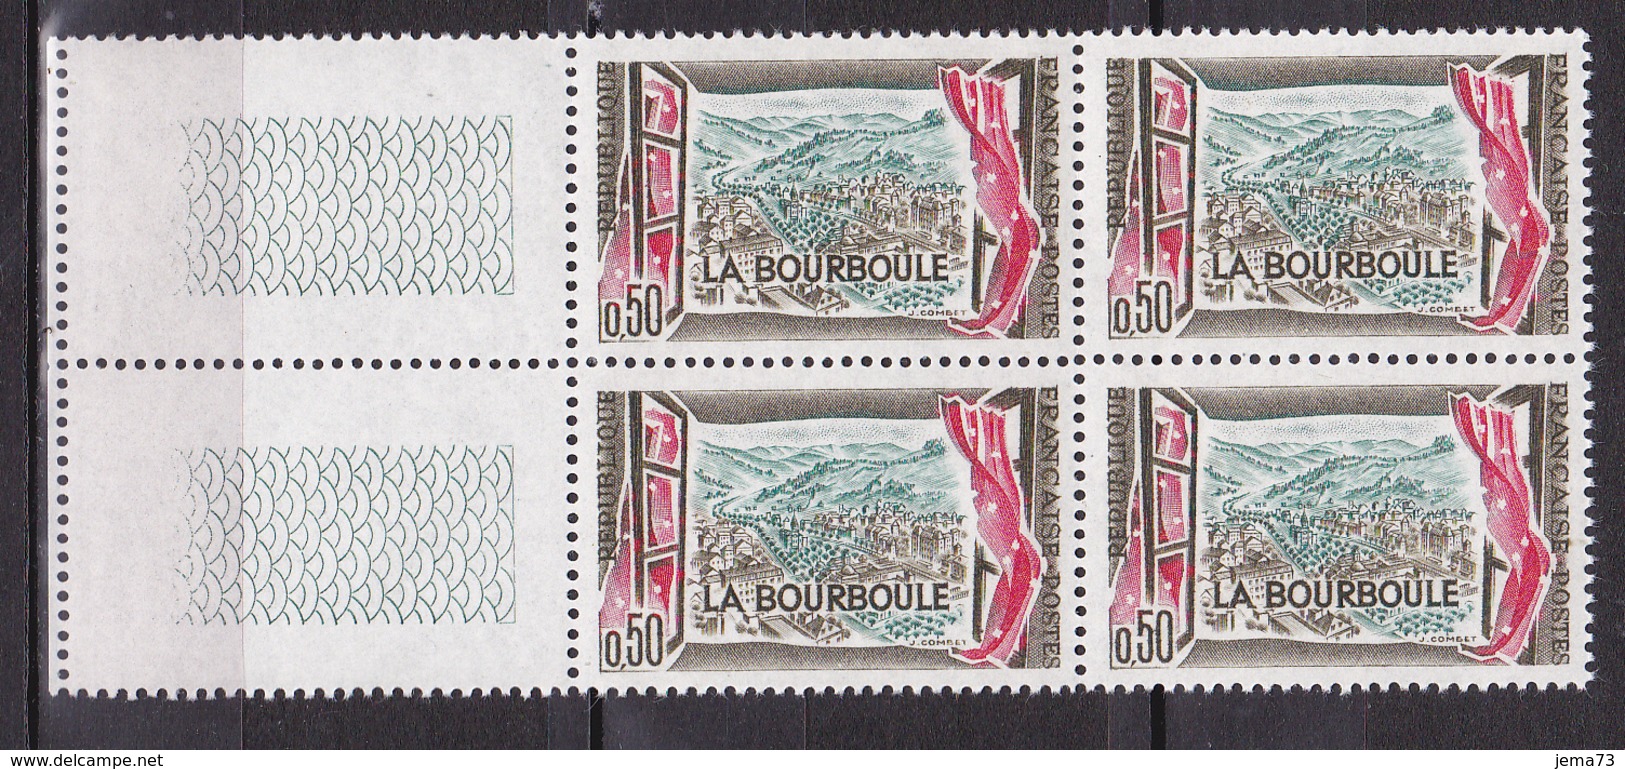 N° 1256 Station Thermale De La Bourboule:  Beau Bloc De 4 Timbres Neuf Impeccable - Neufs